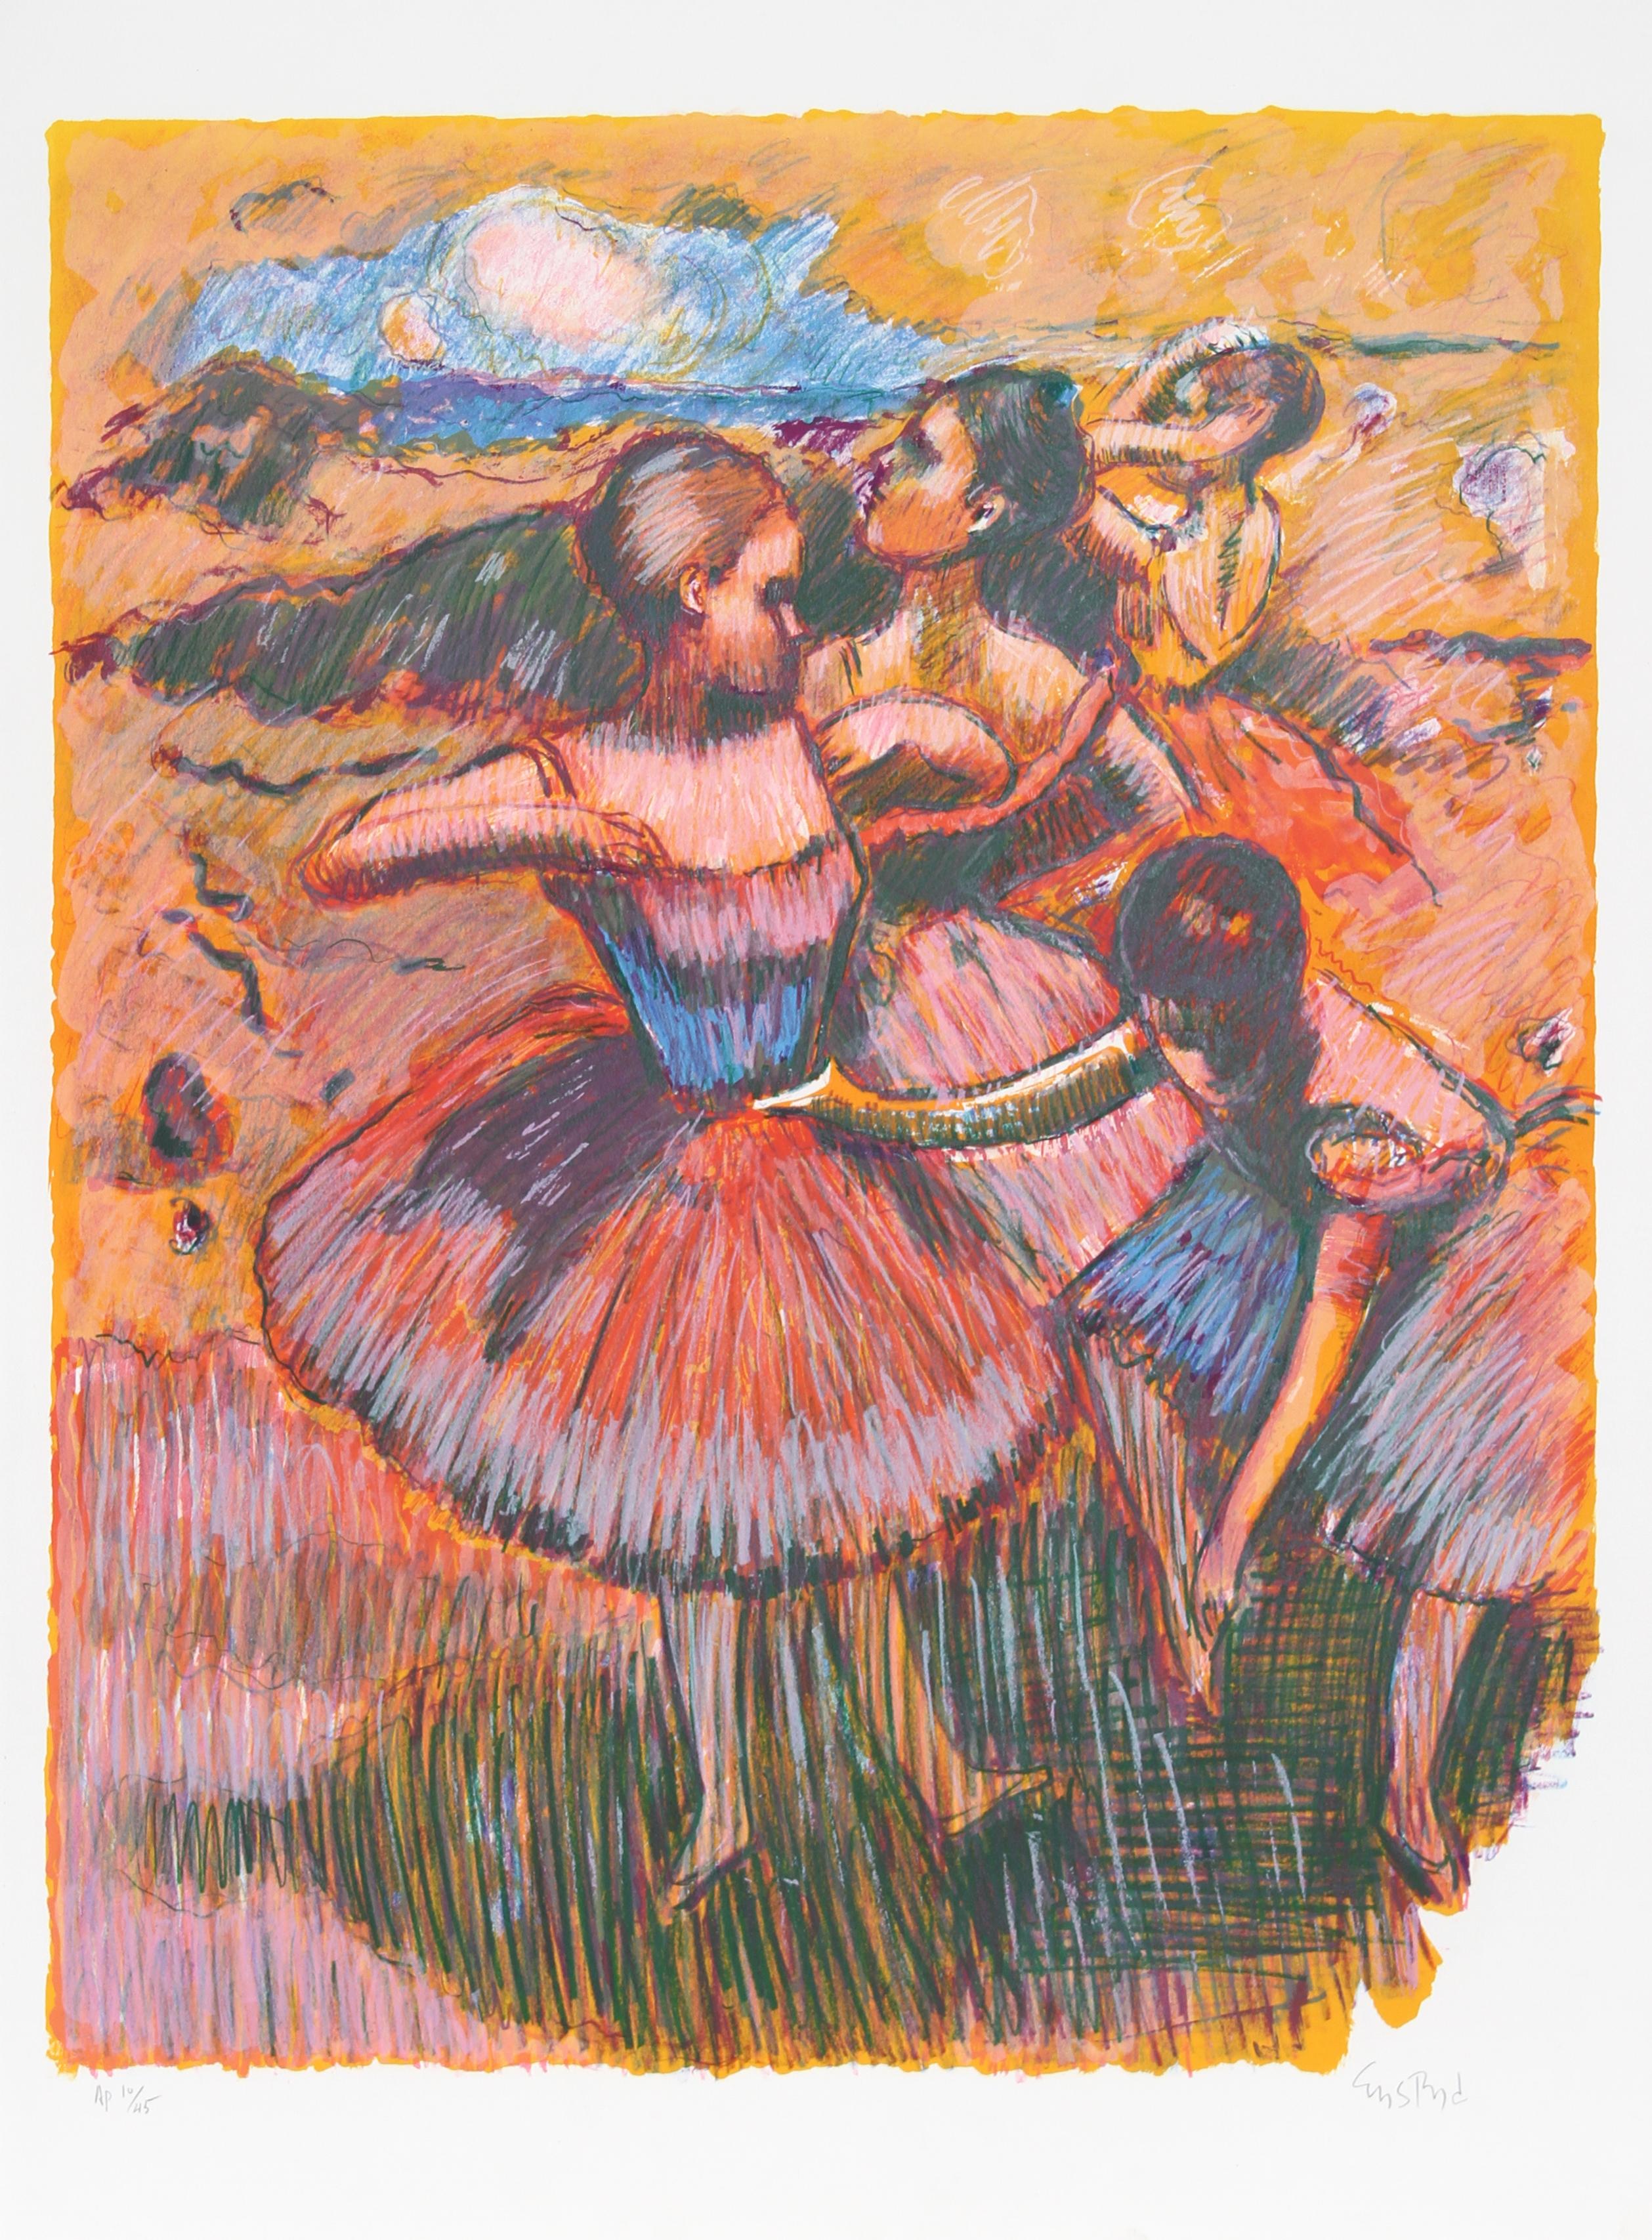 Artiste :  Wayne Ensrud, Américain (1934 - )
Titre :  Hommage à Degas II
Année :  1980
Moyen :  Lithographie, signée et numérotée au crayon
Edition :  AP 45
Taille de l'image :  30 x 24 pouces
Taille :  35 po. x 26 po. (88,9 cm x 66,04 cm)